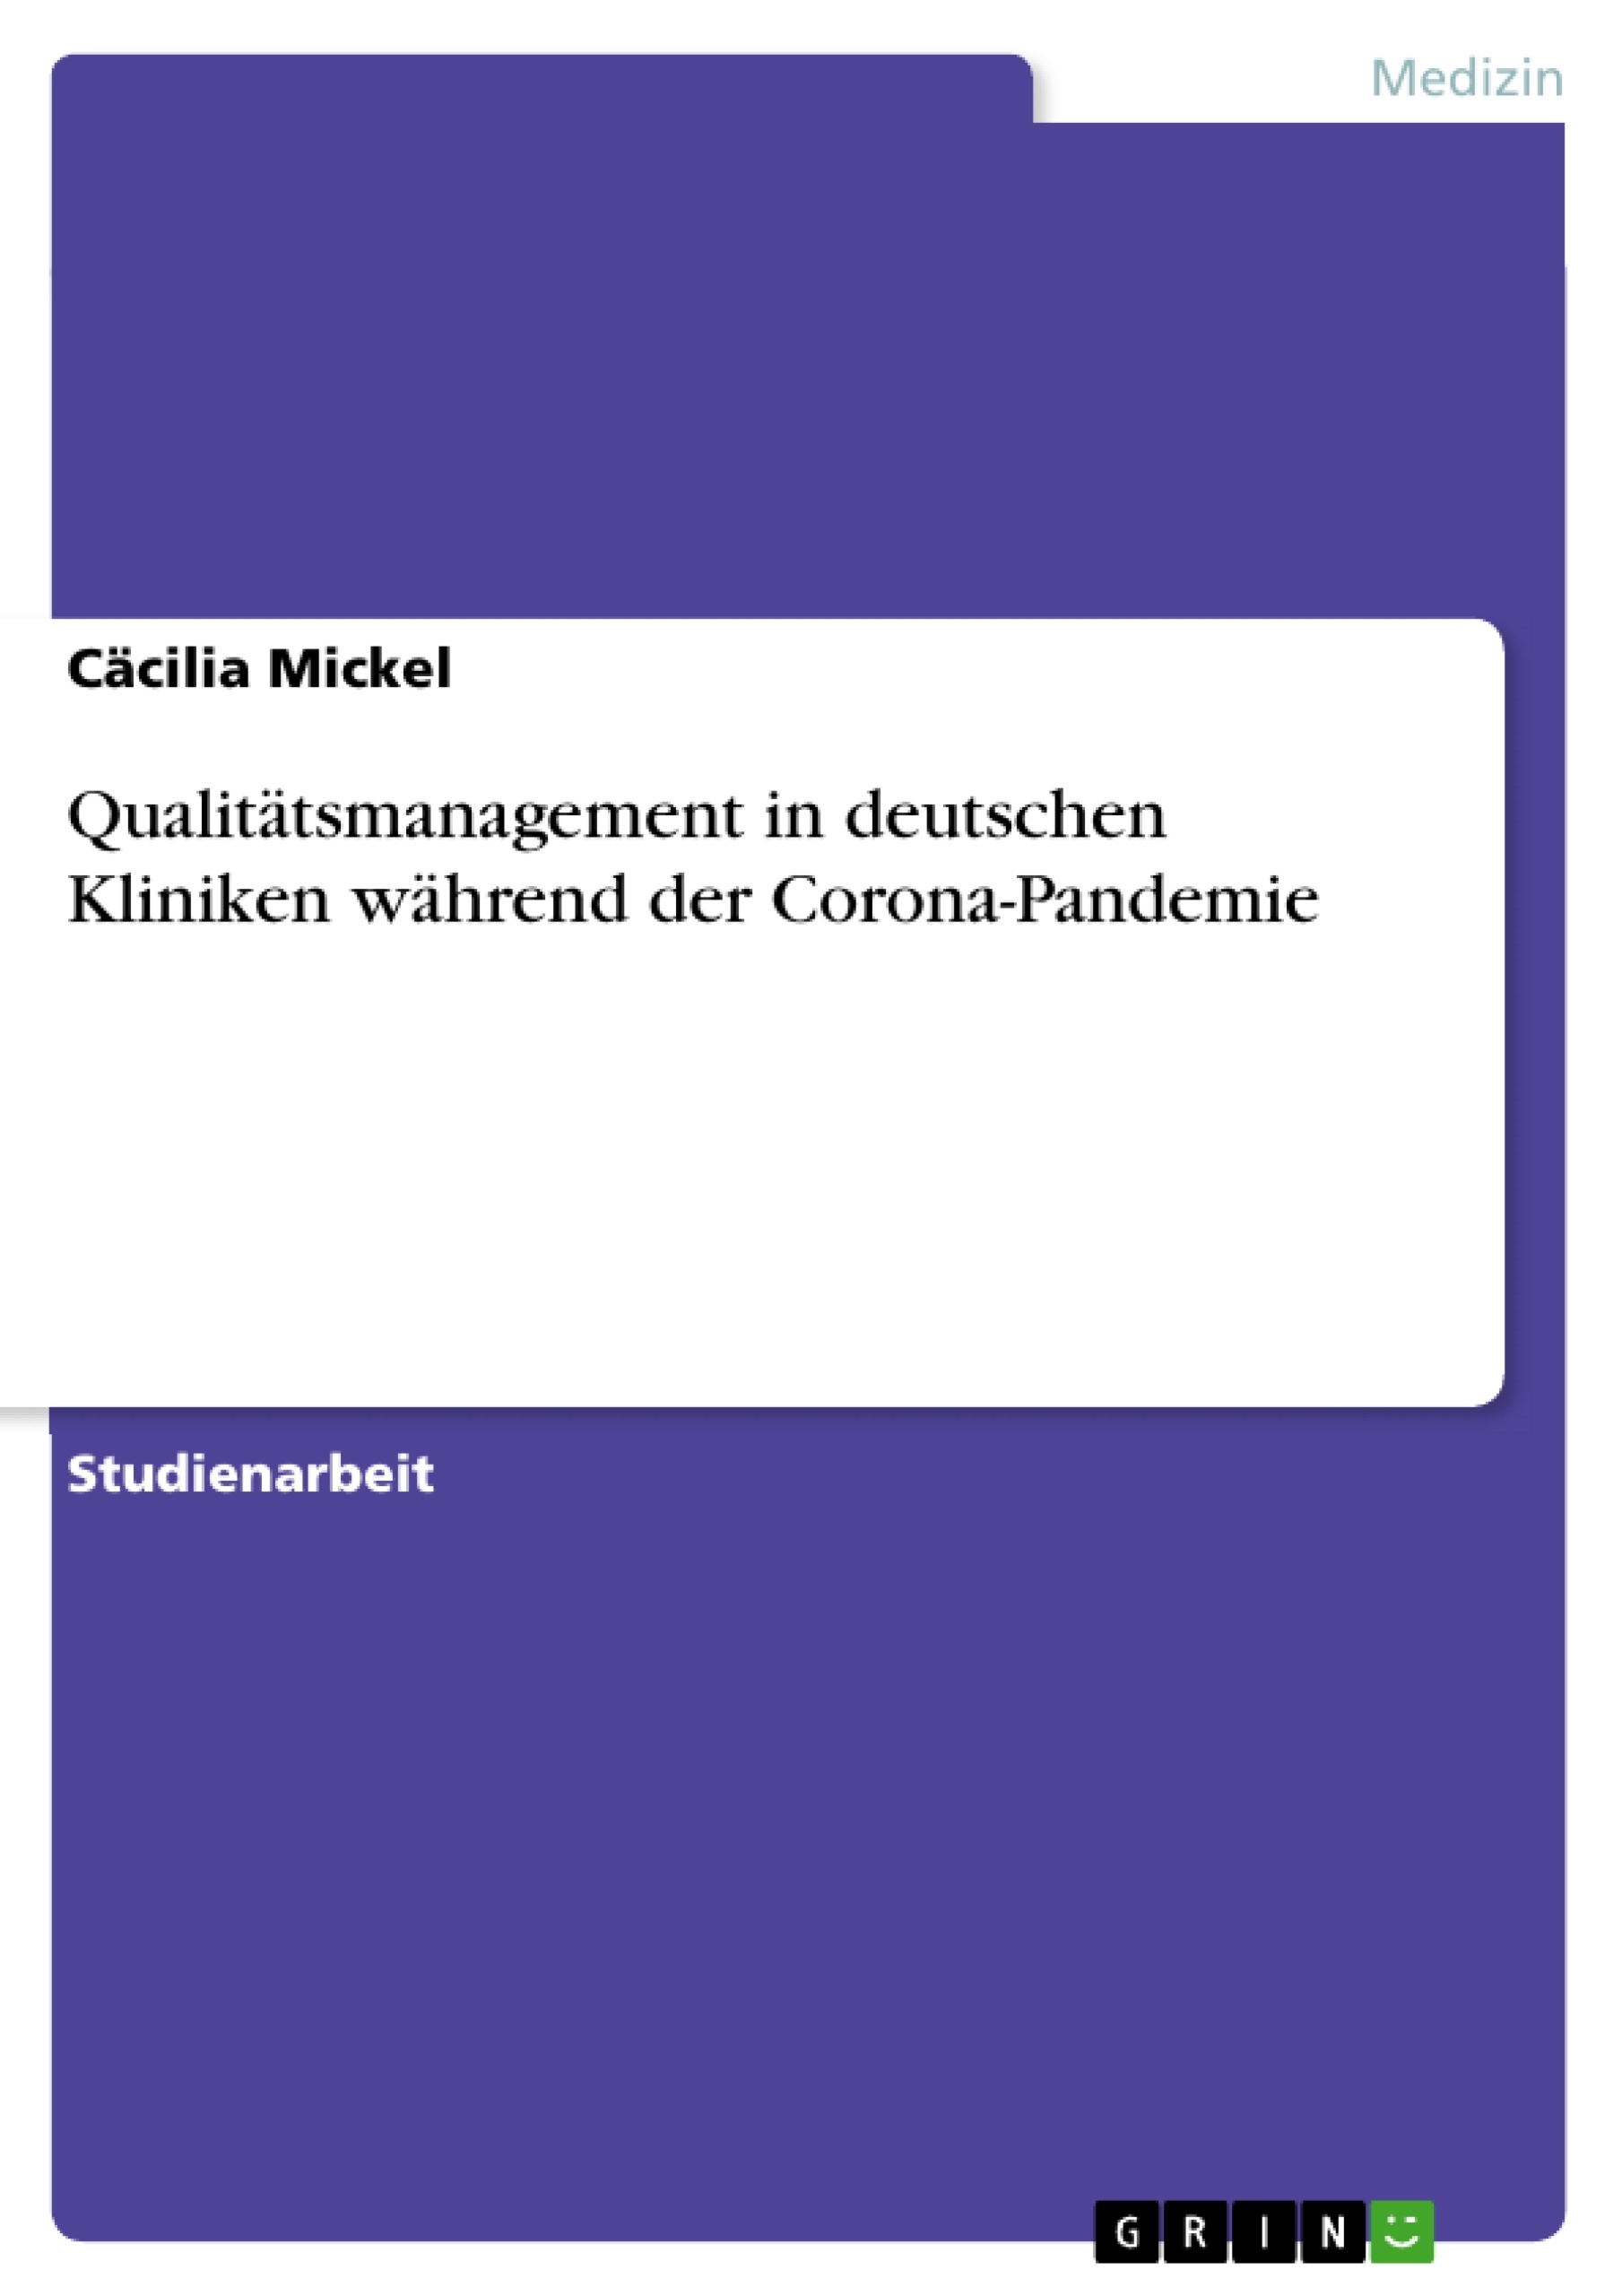 Title: Qualitätsmanagement in deutschen Kliniken während der Corona-Pandemie